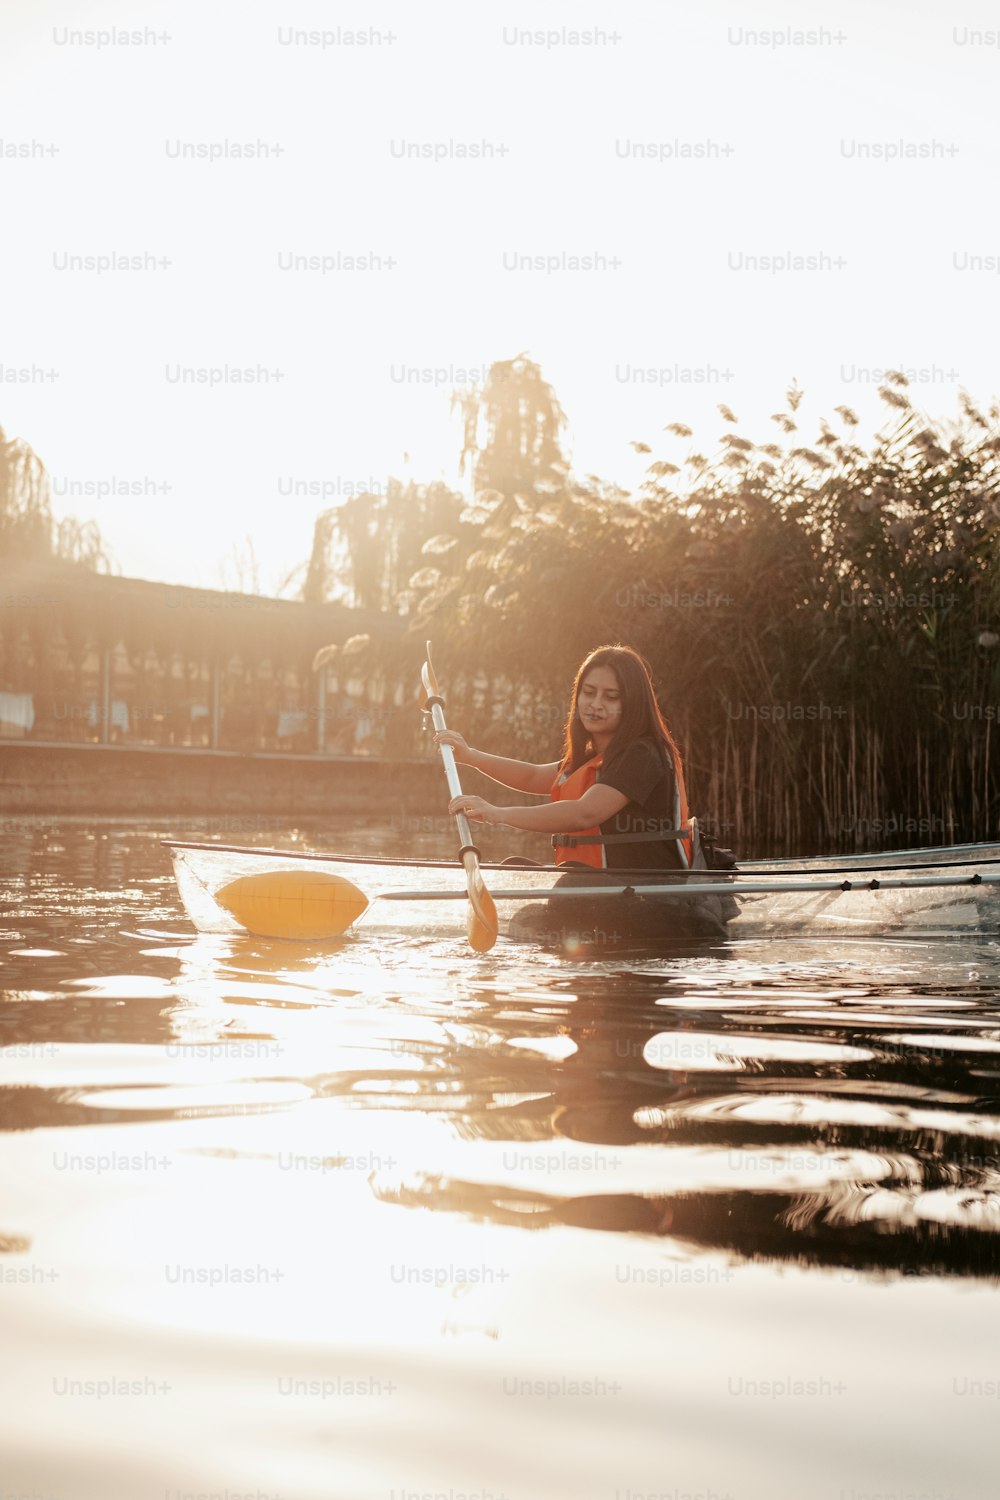 Eine Frau paddelt mit einem Kajak im Wasser